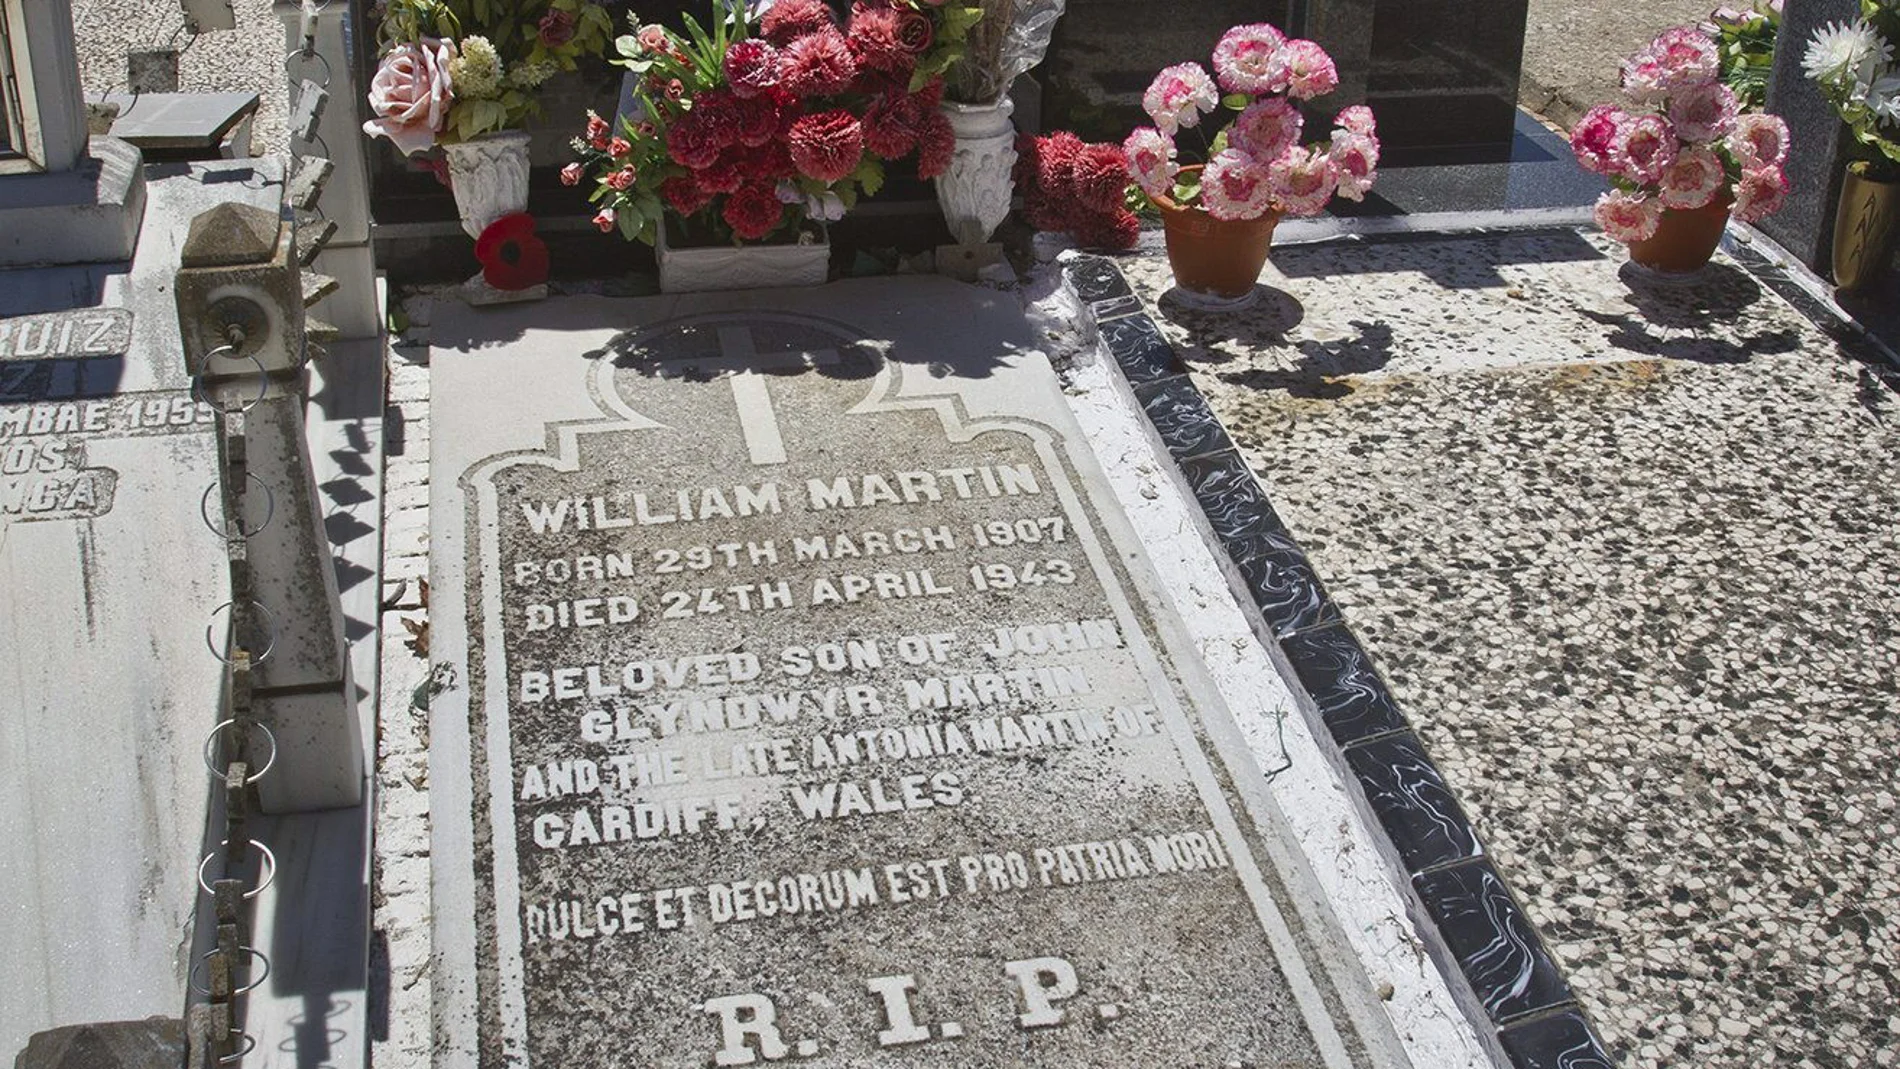 Homenaje a William Martin, 'El hombre que nunca existió' 